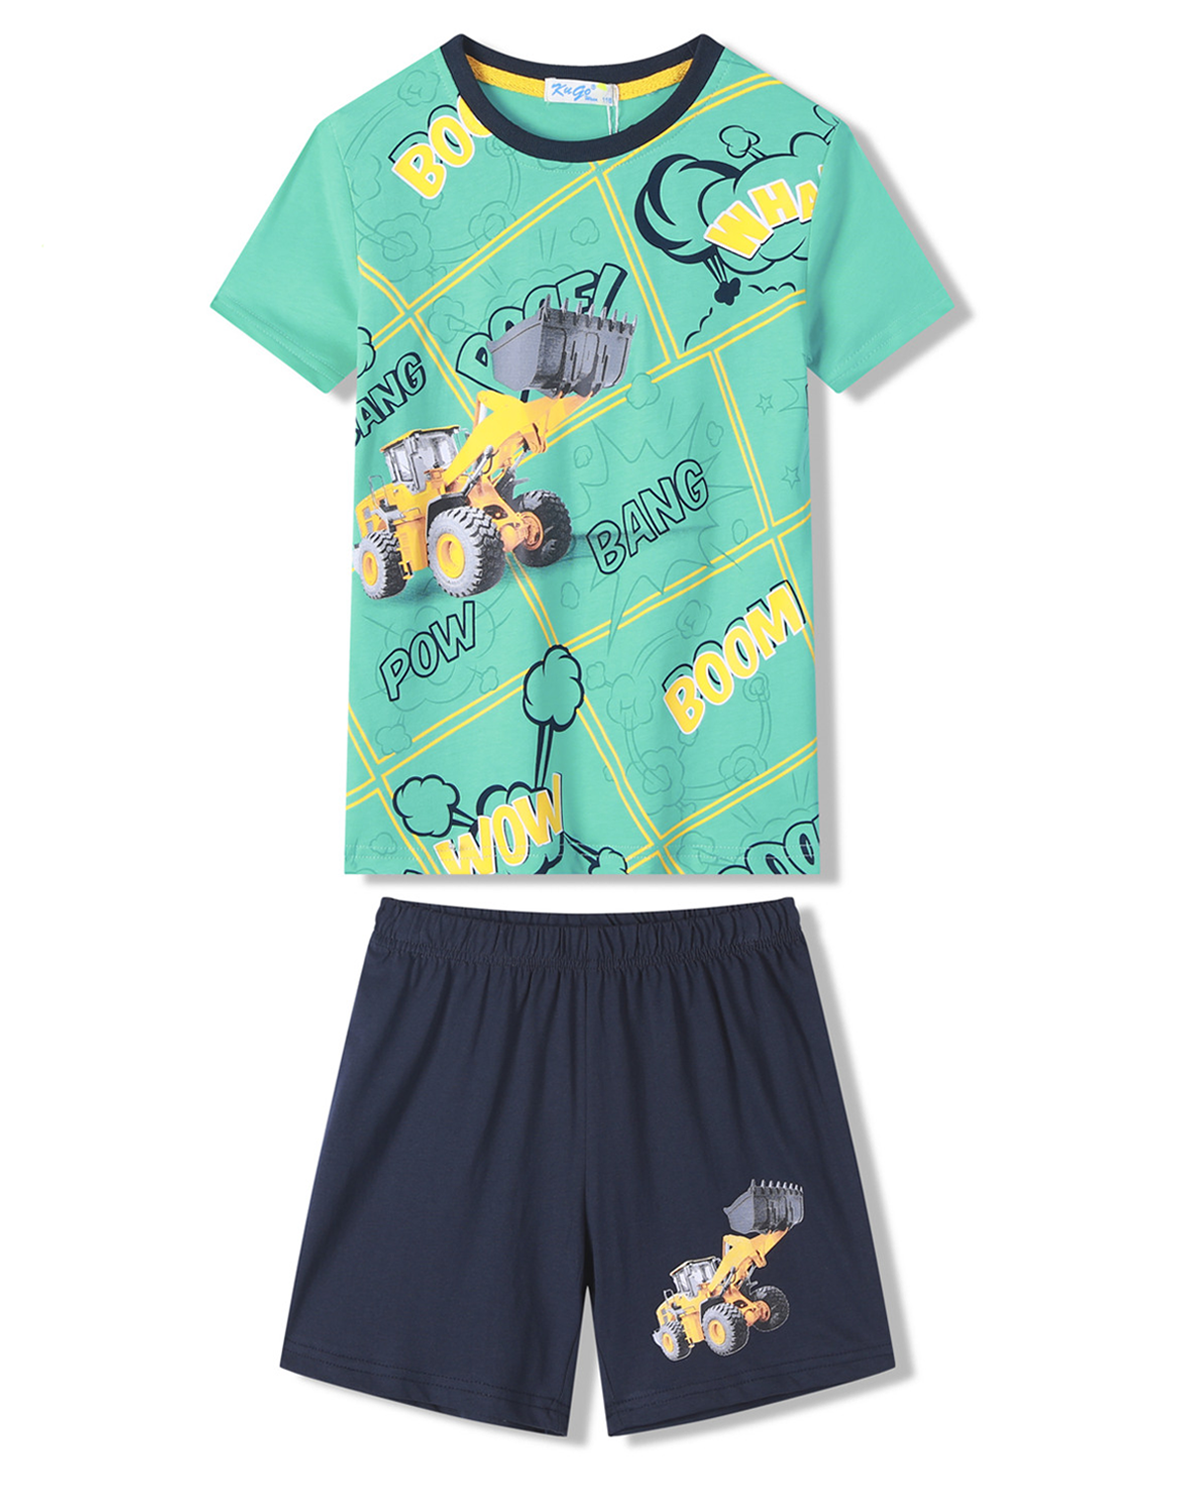 Chlapecké pyžamo - KUGO WT7310, zelinkavá Barva: Zelinkavá, Velikost: 122